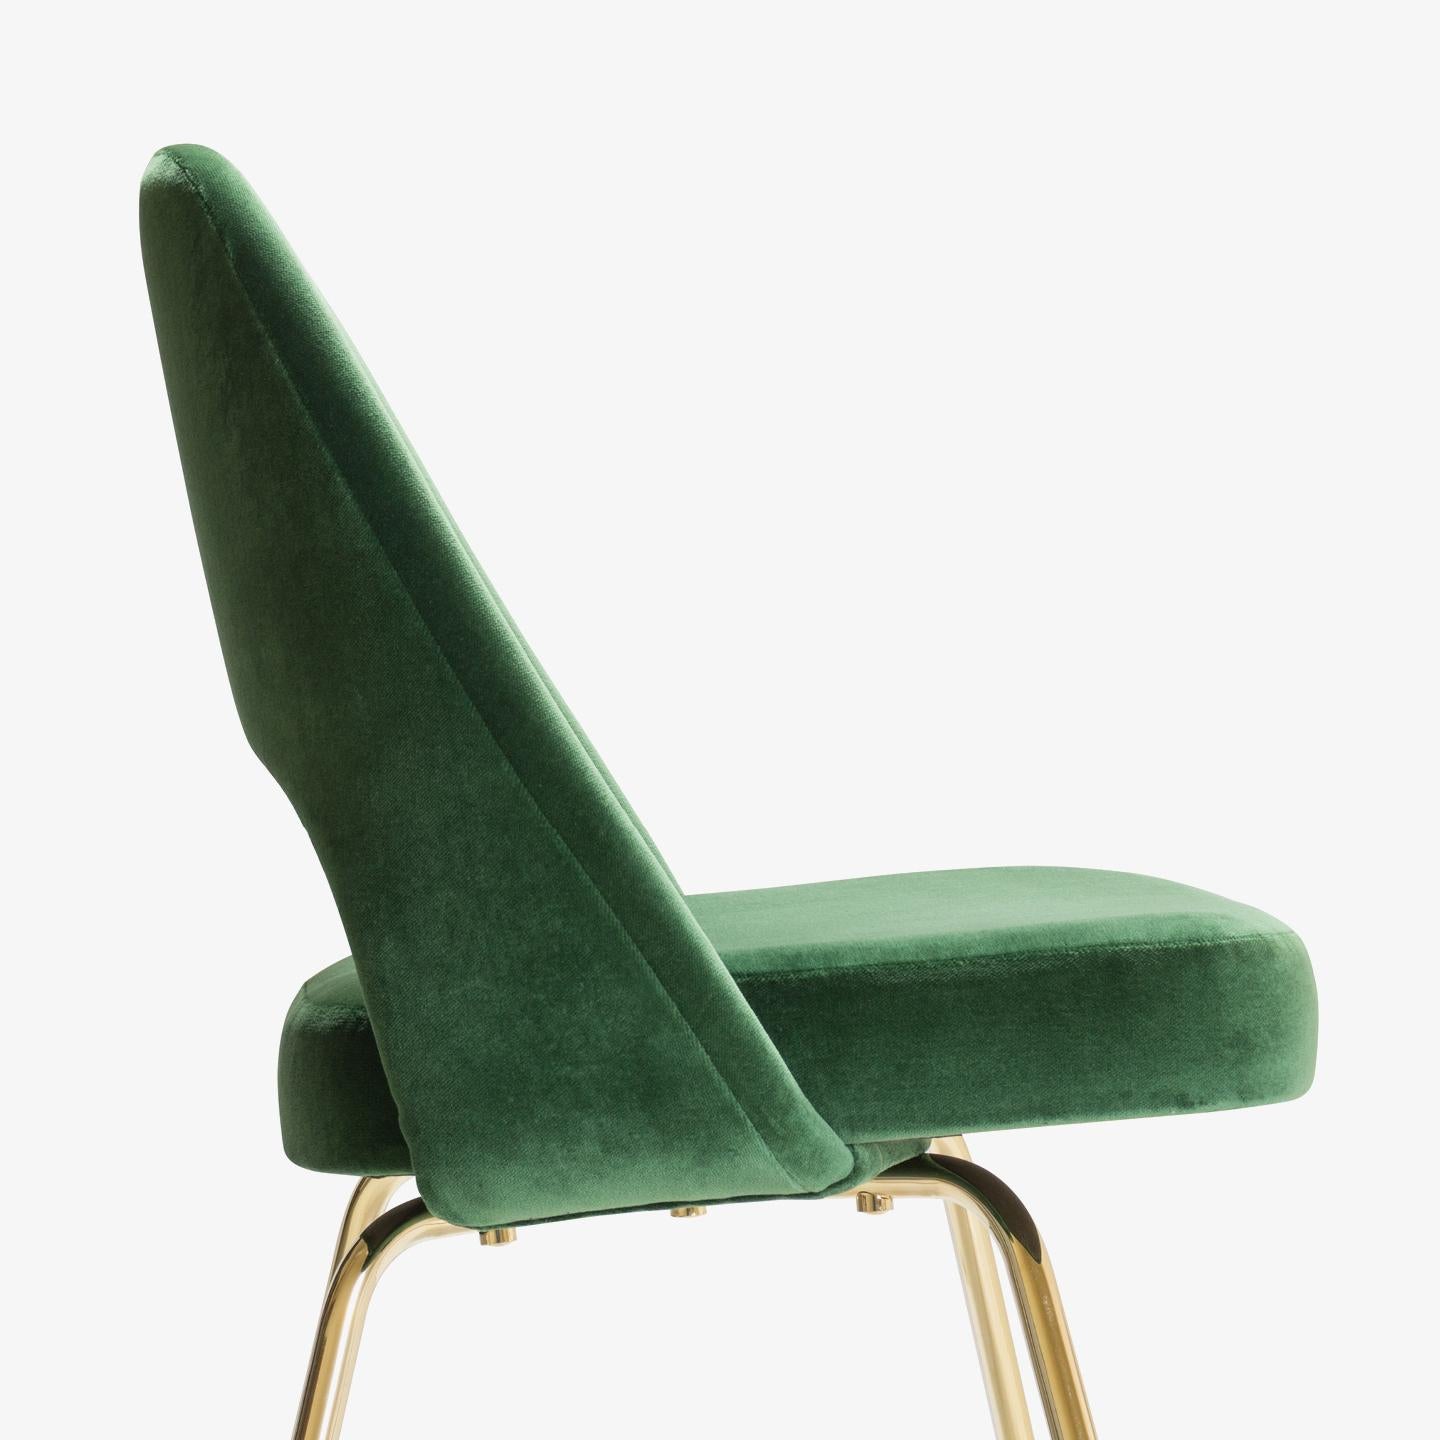 La nouvelle génération des célèbres fauteuils de direction d'Eero Saarinen est arrivée. Il s'agit de fauteuils de direction 100% authentiques d'Eero Saarinen pour Knoll, entièrement restaurés avec une touche d'or supplémentaire.

Depuis des années,